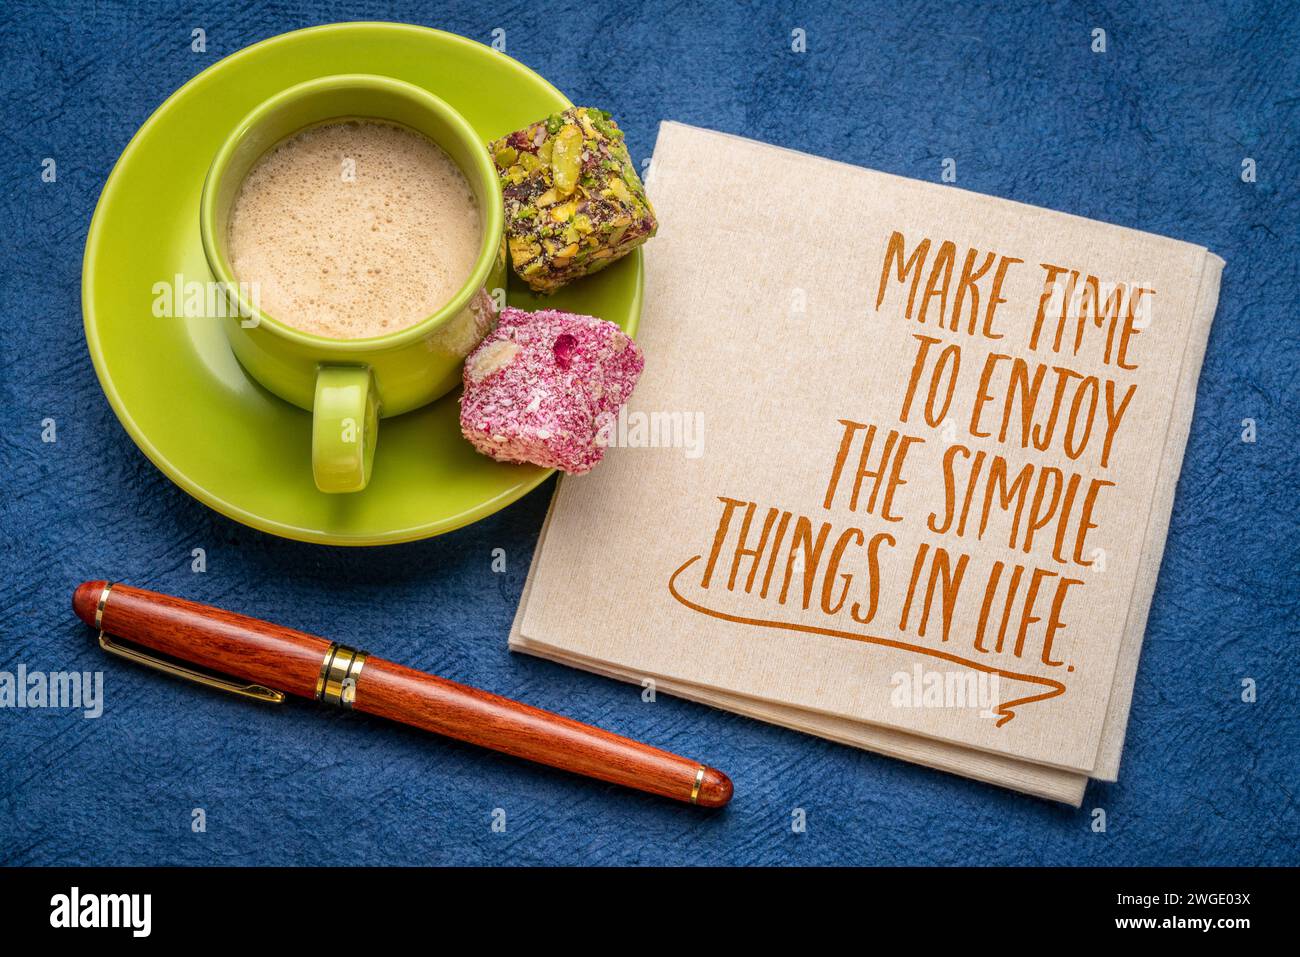 Prenez le temps de profiter des choses simples dans la vie - note inspirante sur une serviette avec une tasse de café, soins personnels et concept de développement personnel Banque D'Images